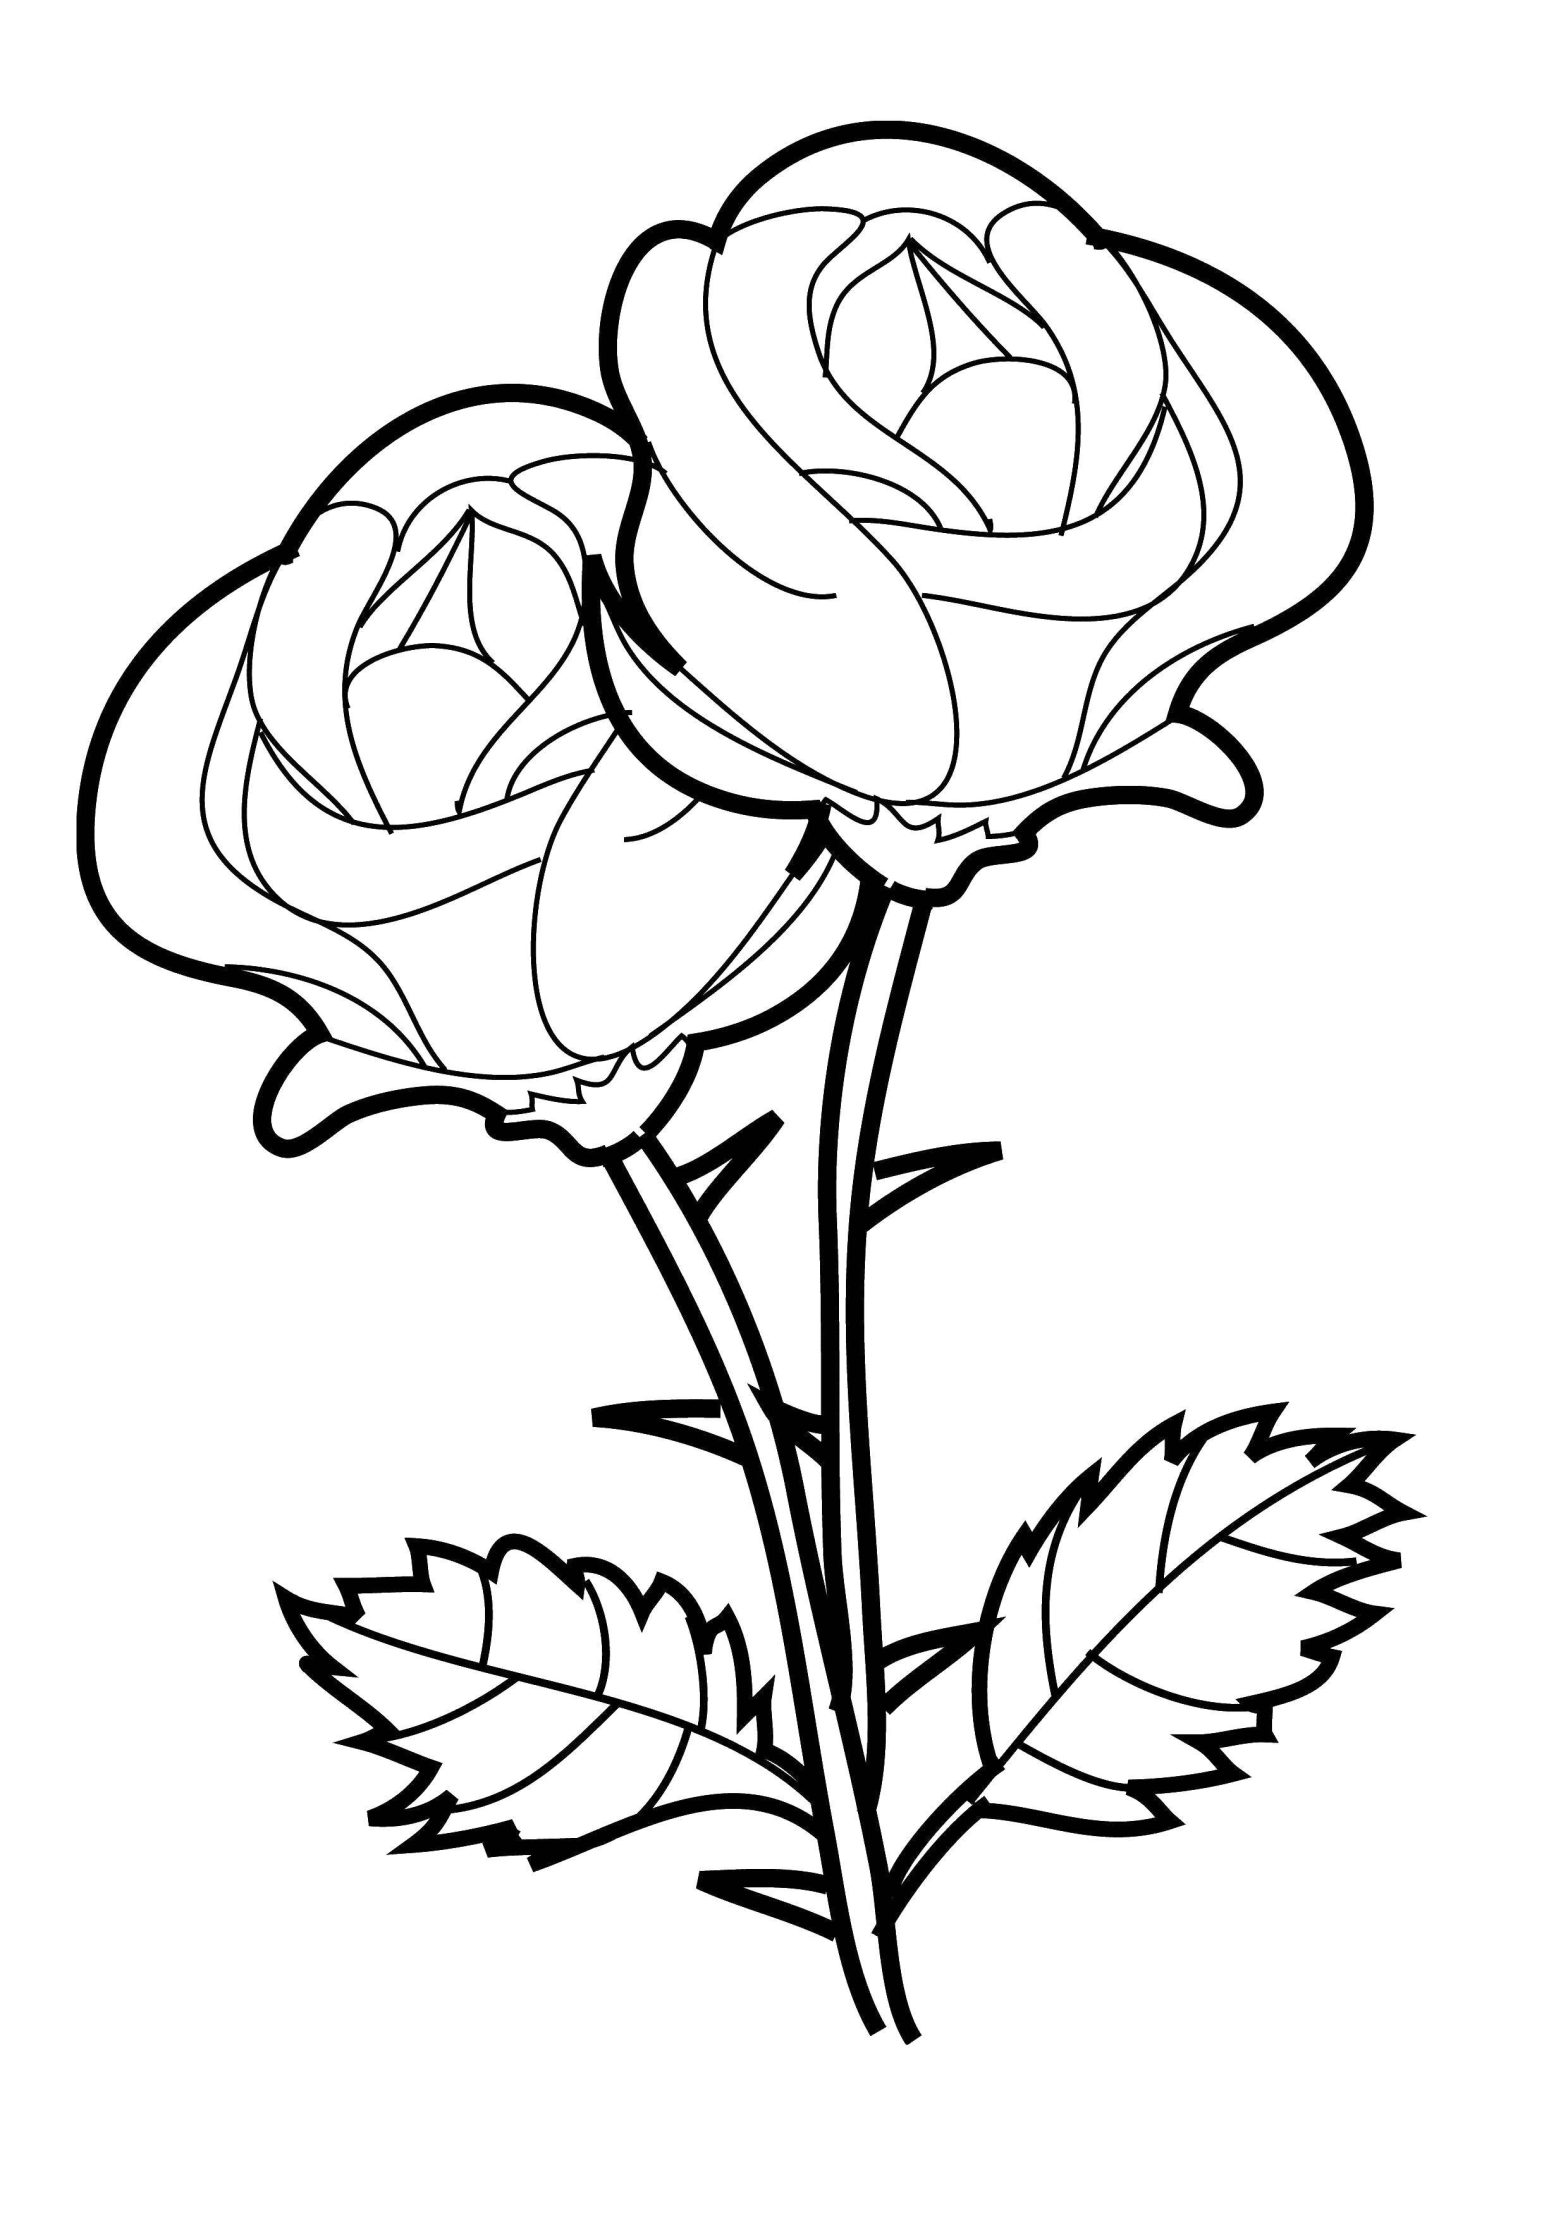 Раскраски цветов: букеты из роз и шиповидных роз (букеты, розы)